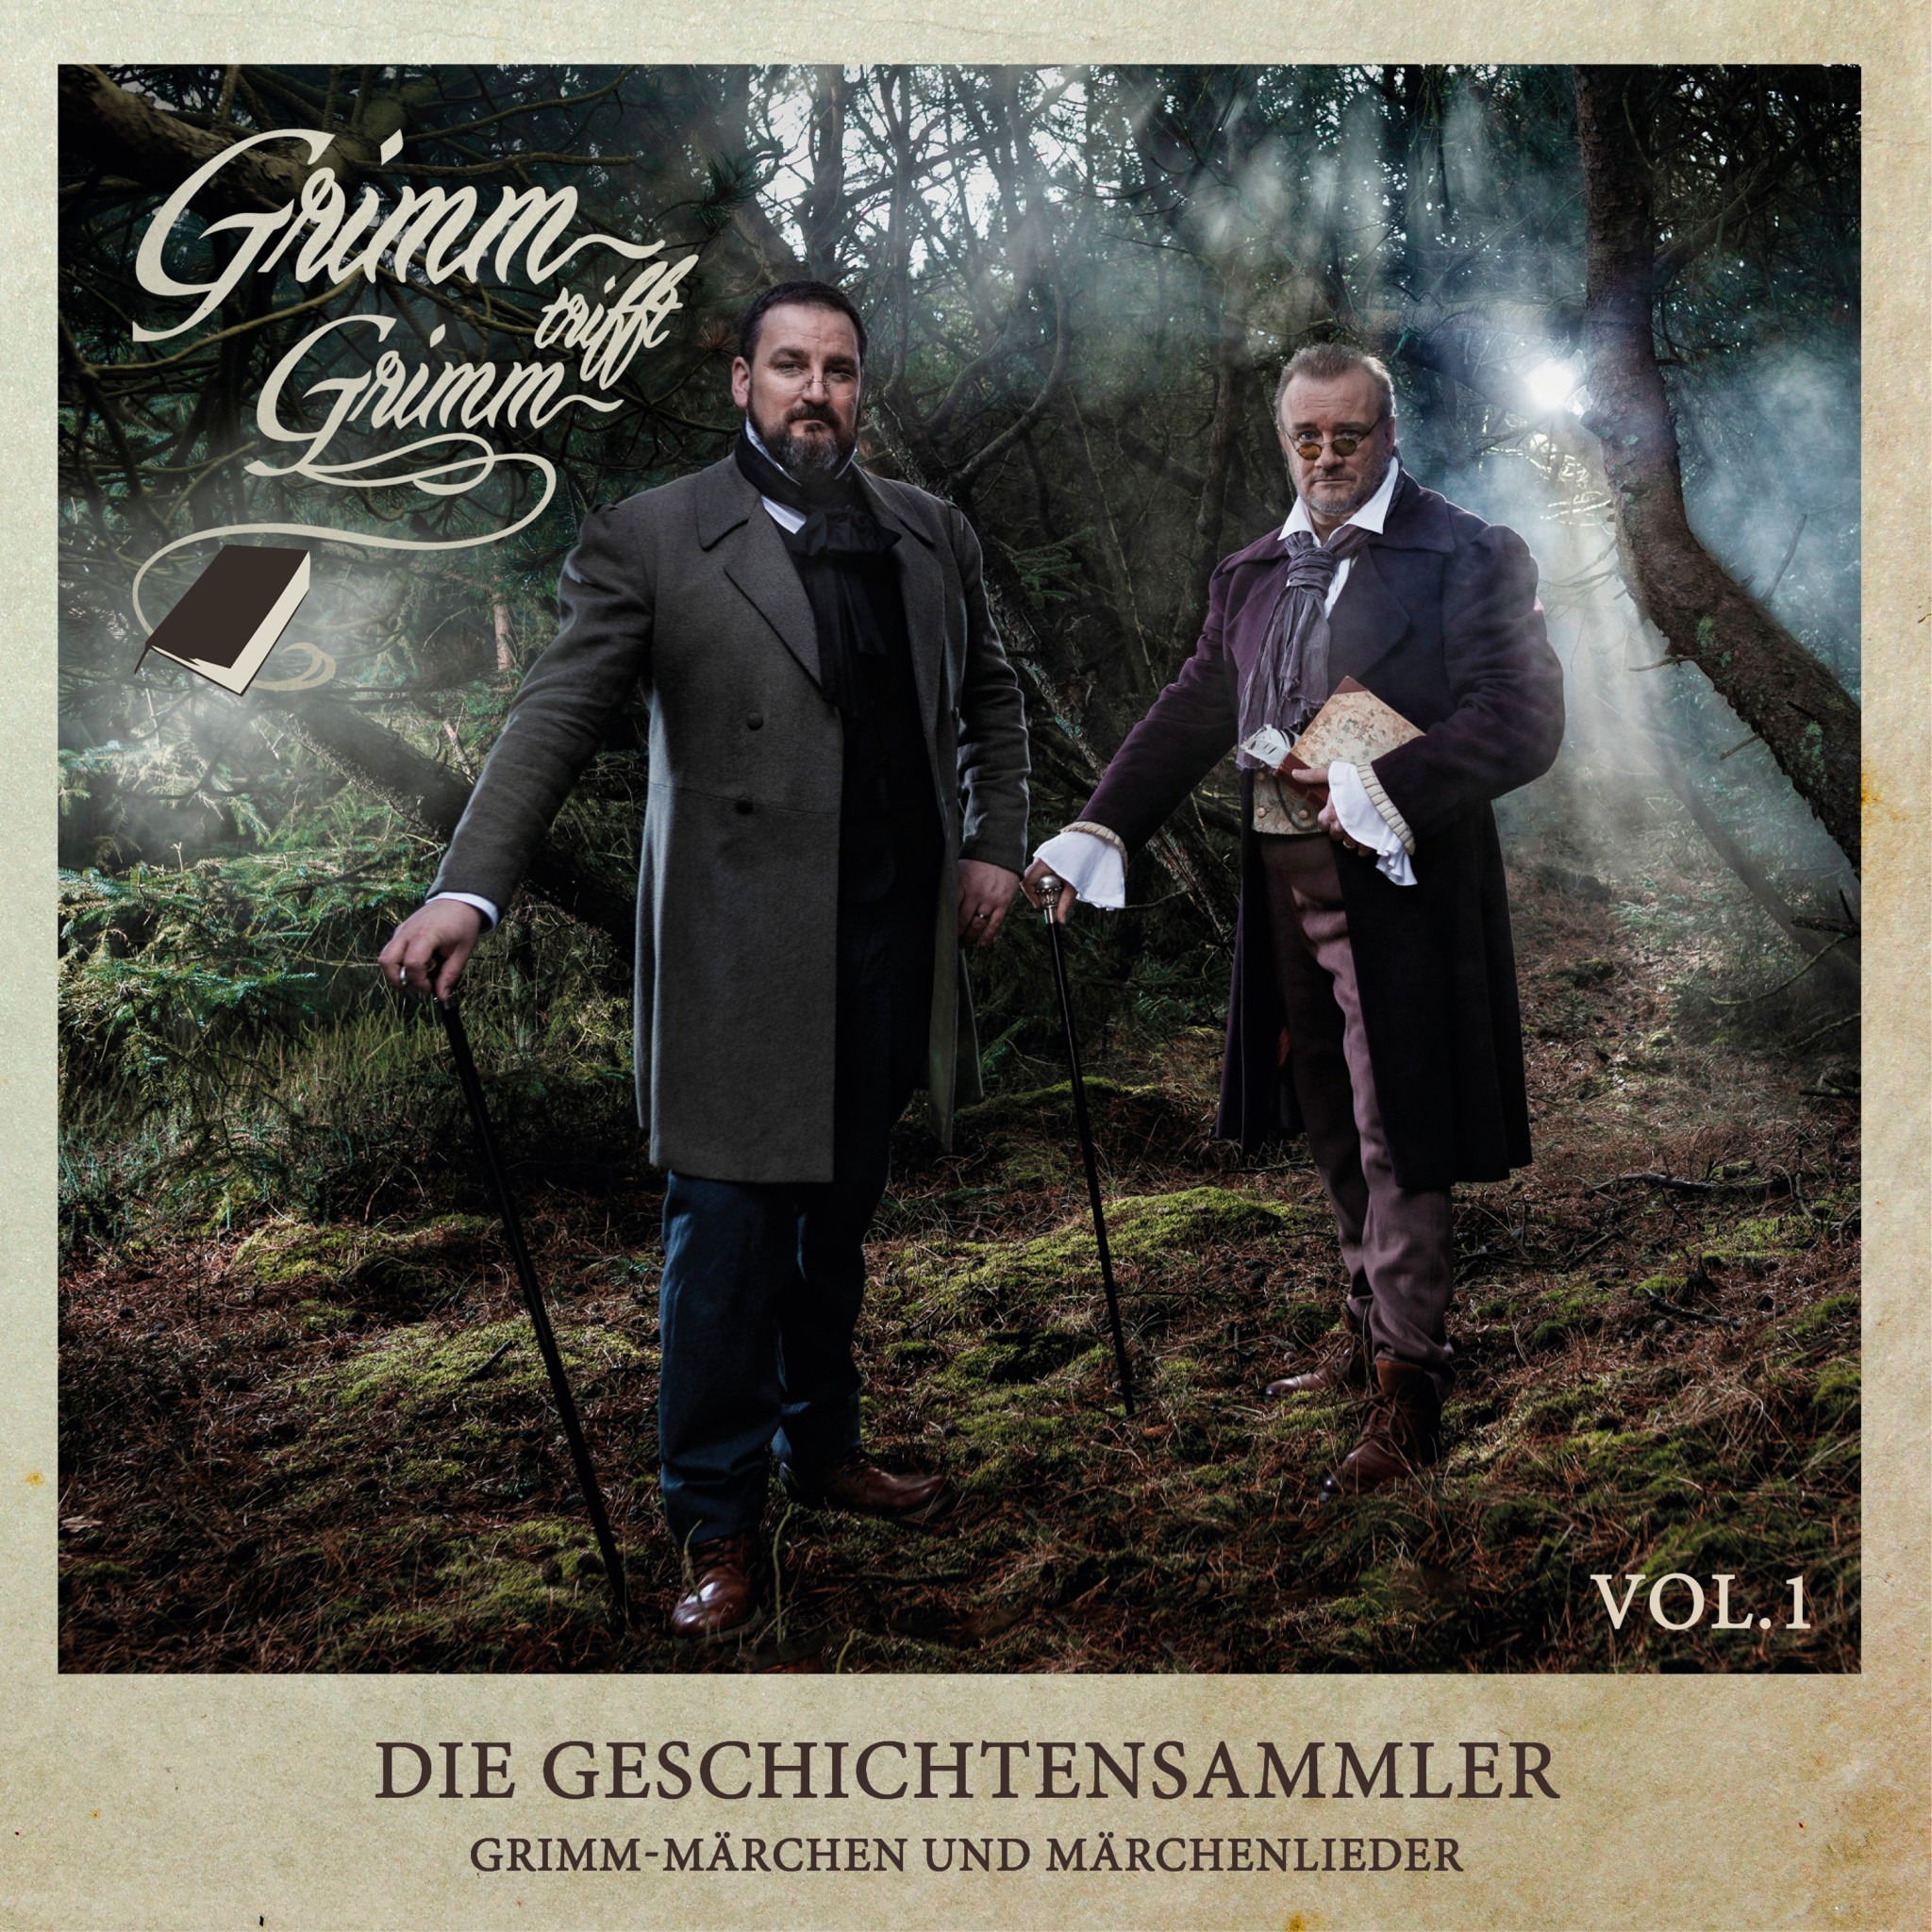 Die Geschichtensammler – Grimm-Märchen und Märchenlieder Vol. 1 - COVER